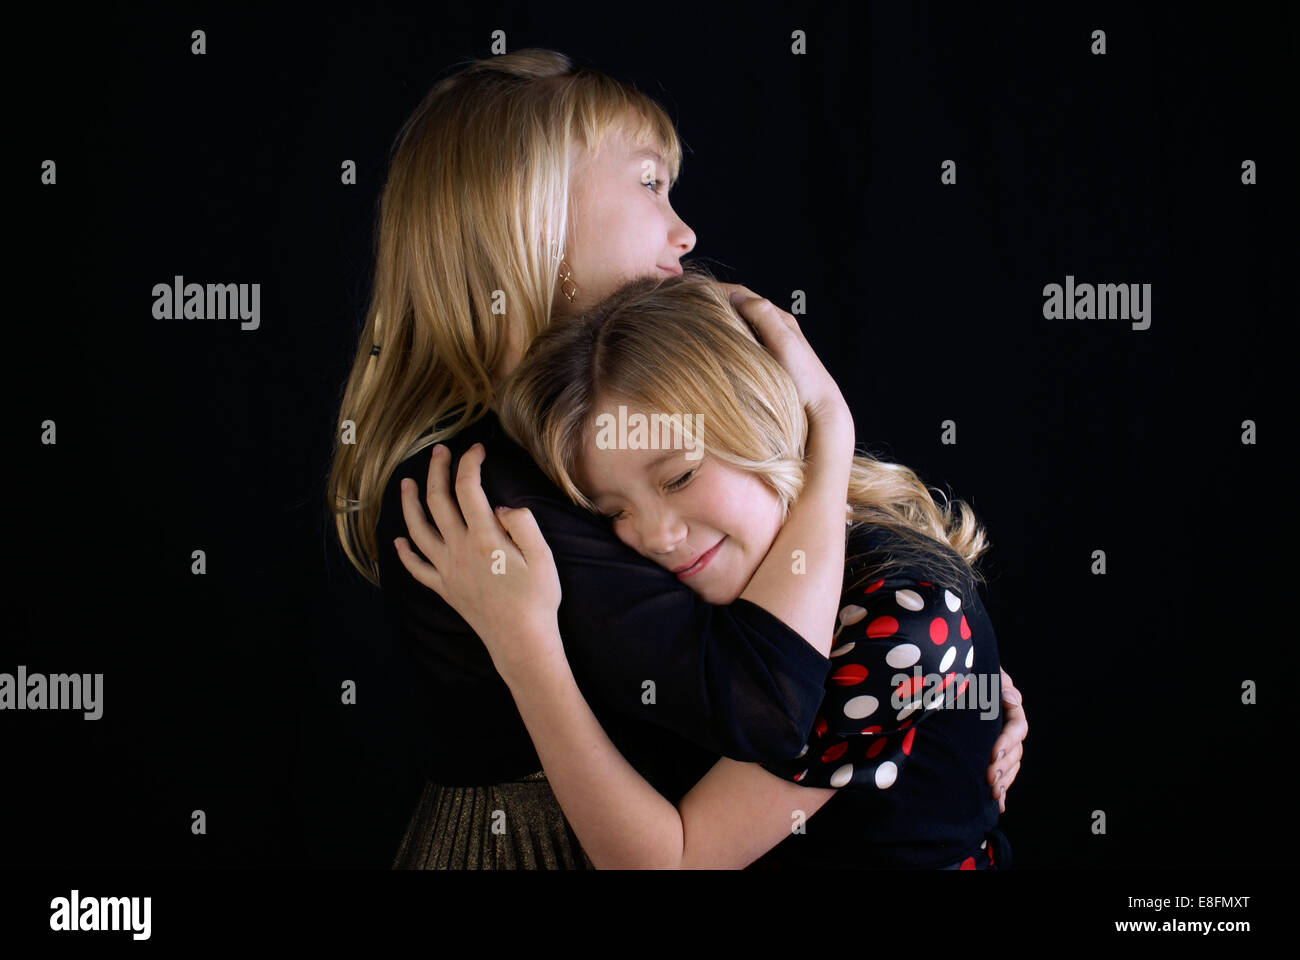 Foto de estudio de dos hermanas (12-13, 16-17) abrazos Foto de stock